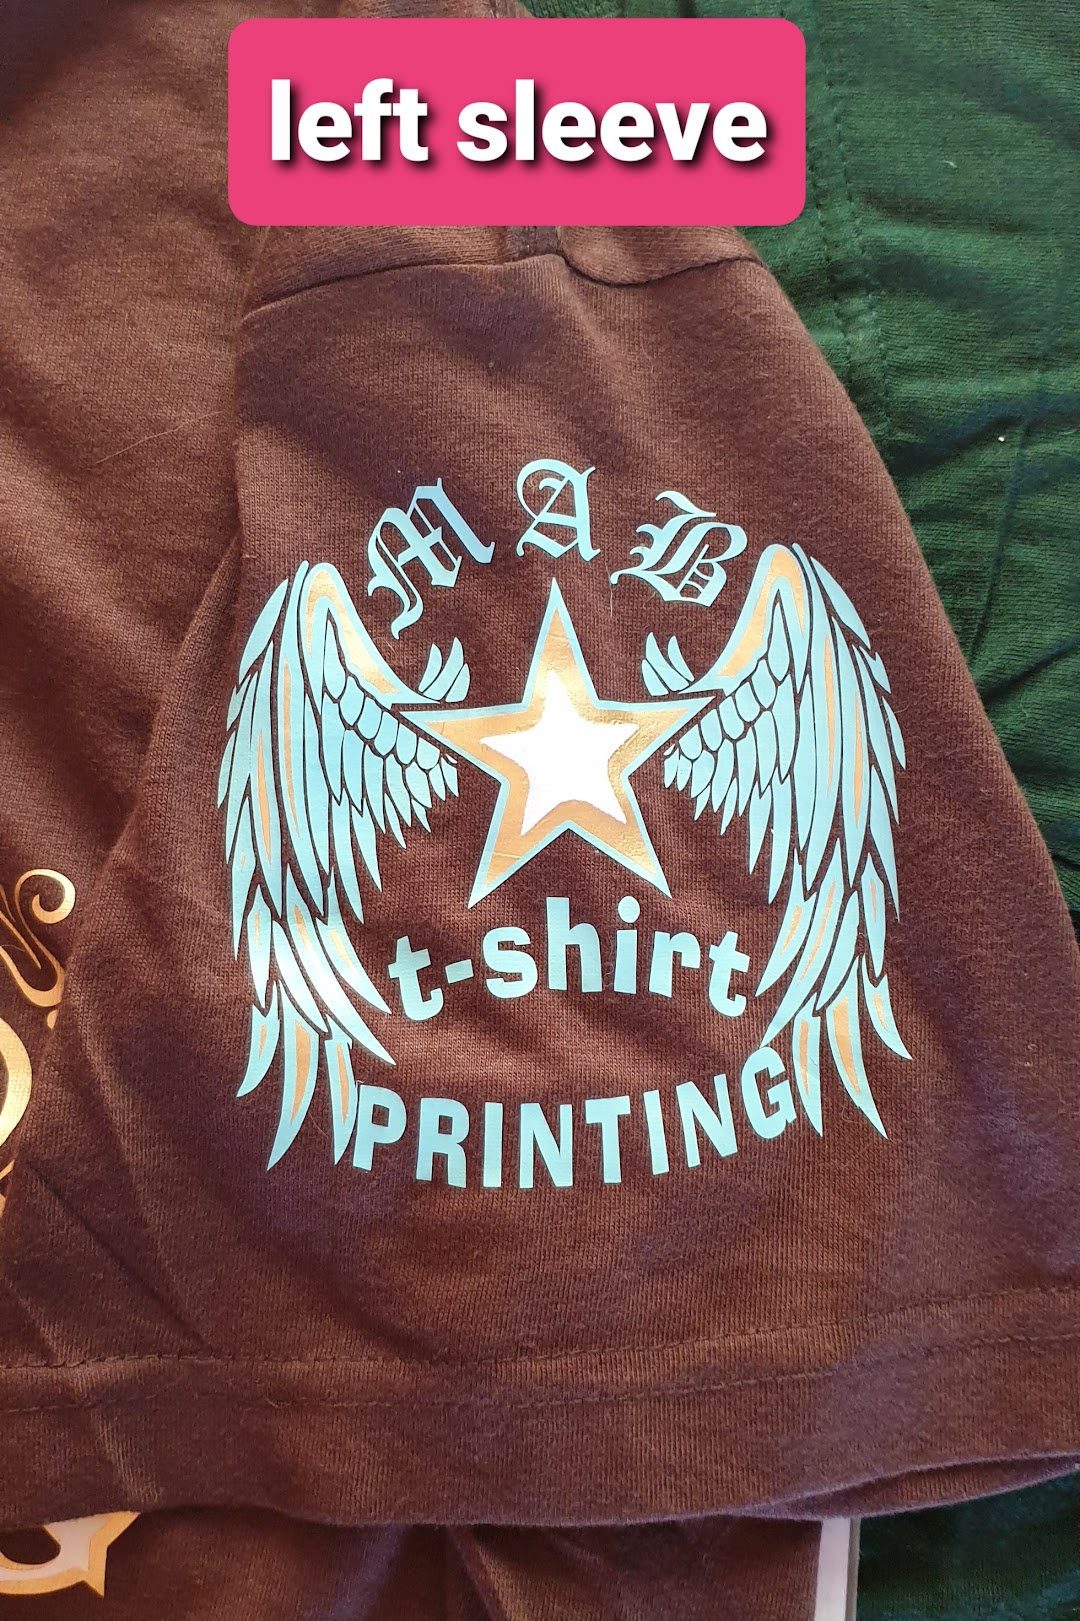 MAB T-Shirt Printing